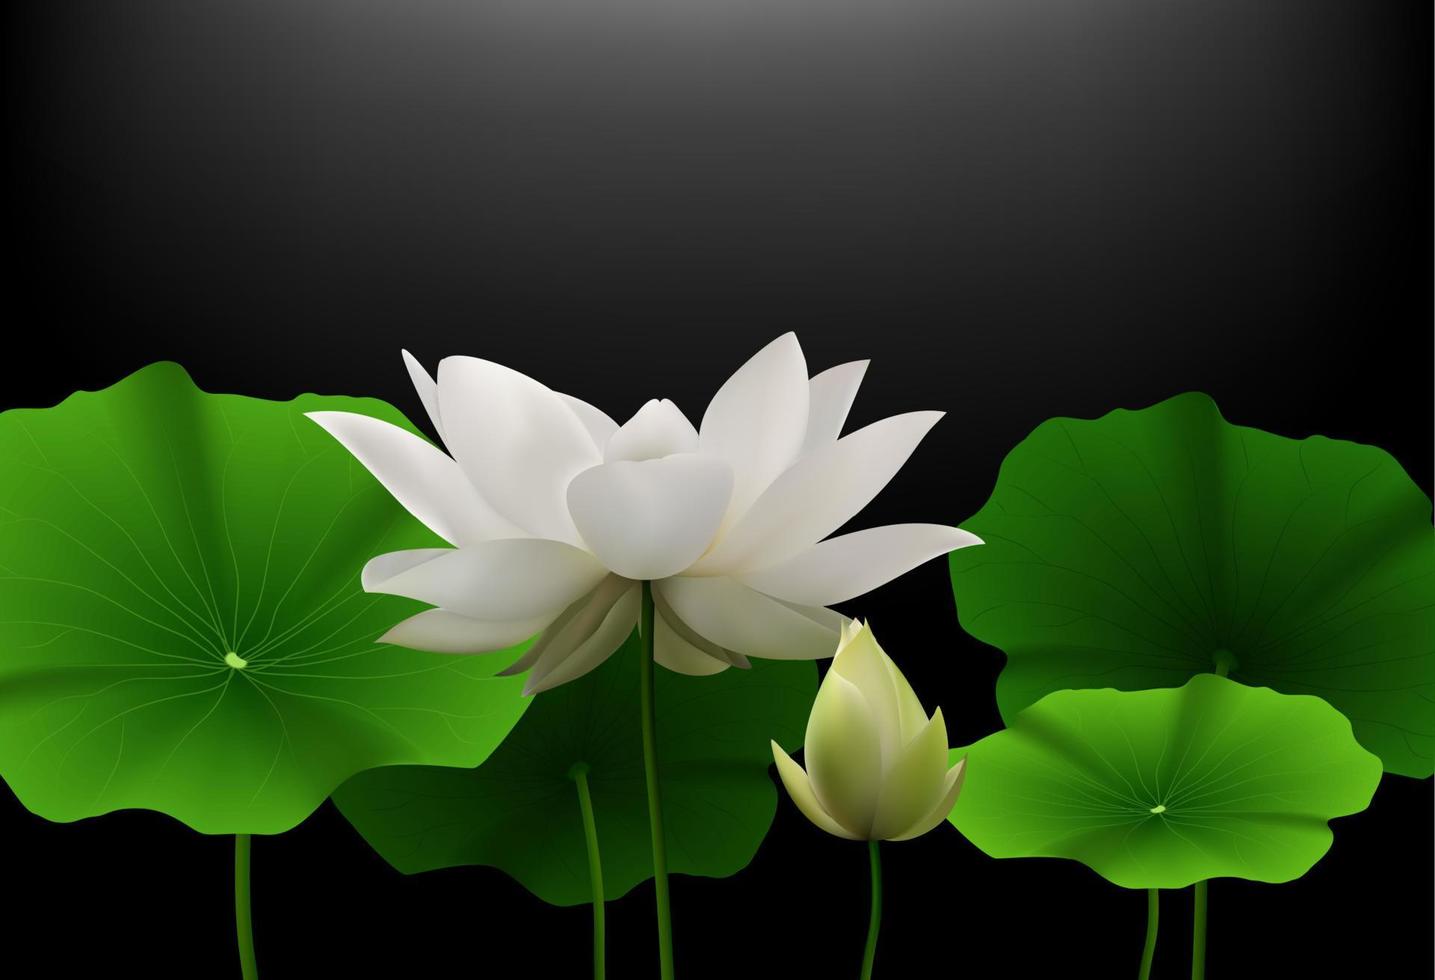 flor de lótus branca com folhas verdes em fundo preto. vetor